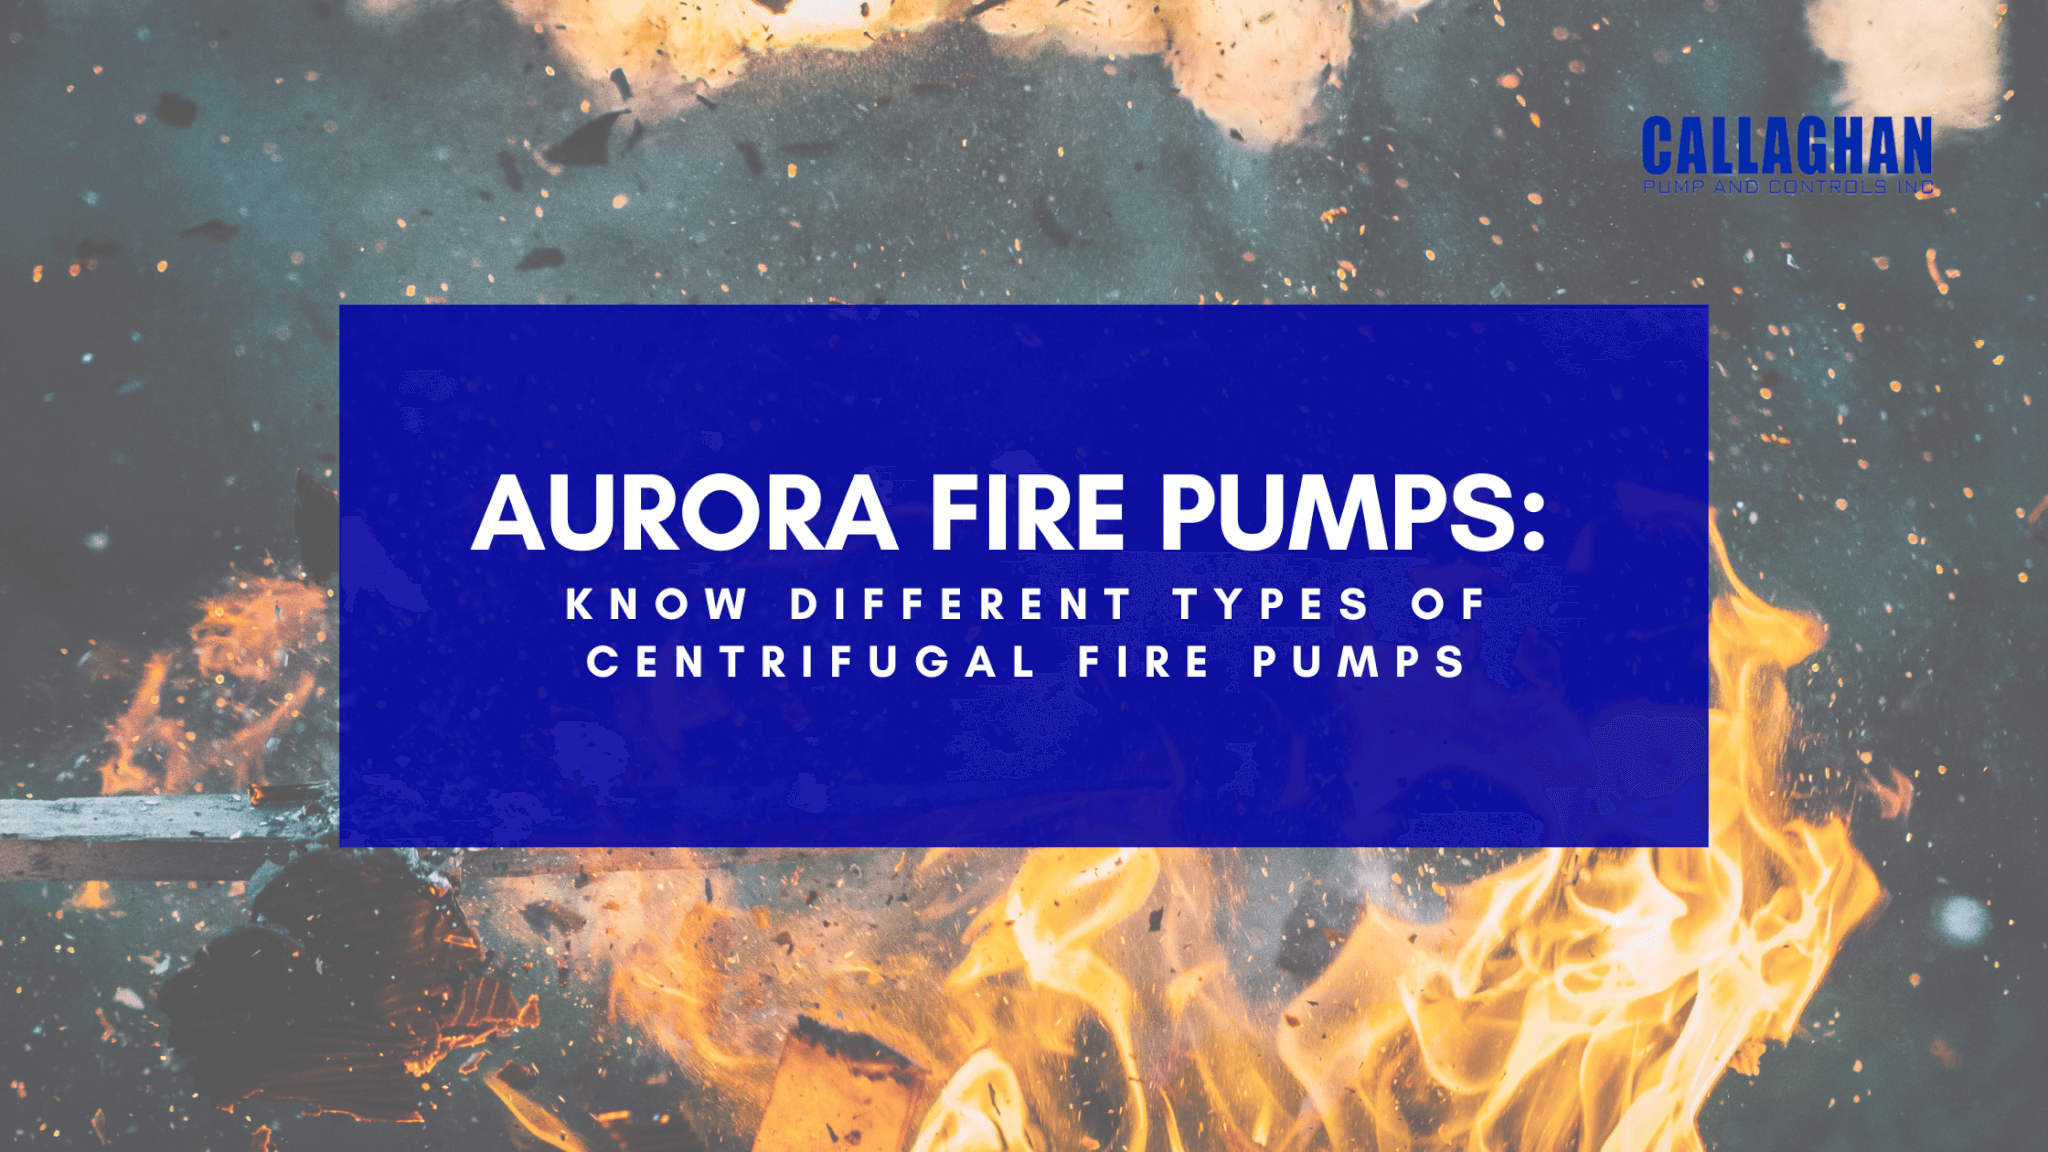 Aurora fire pumps